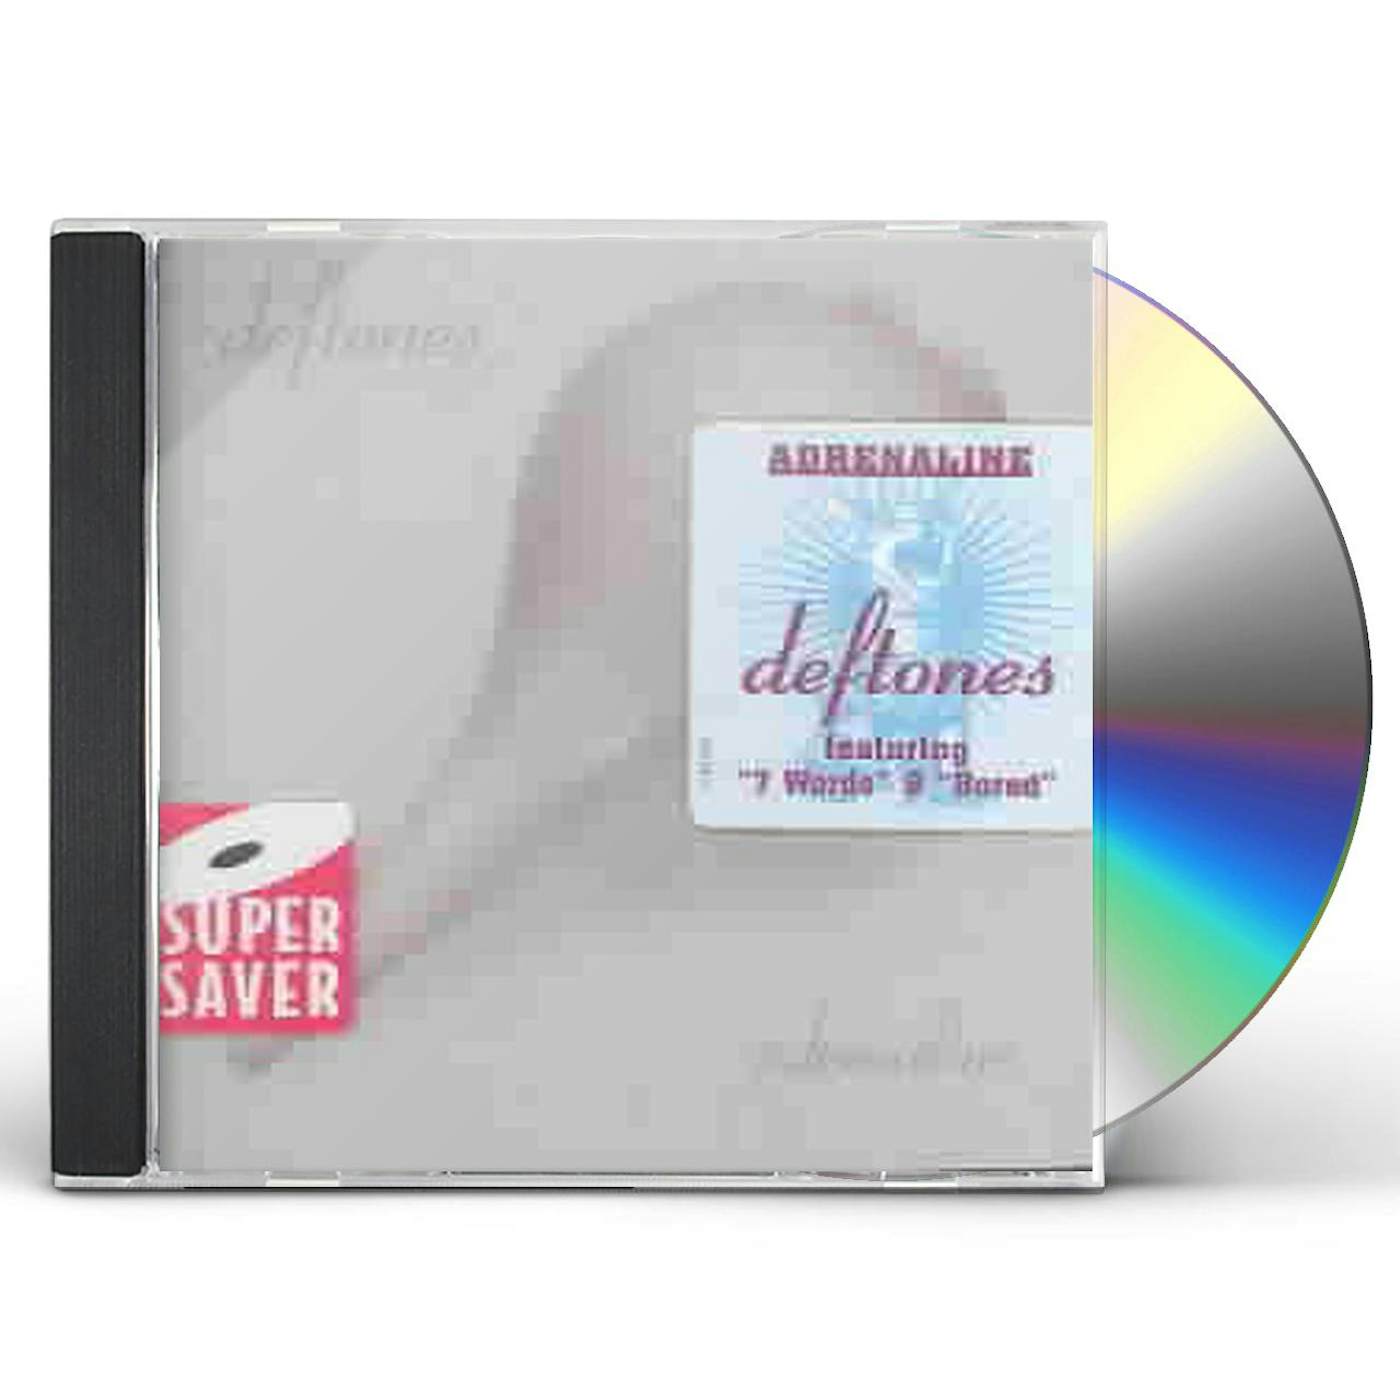 Minus Blindfold (track) by Deftones : Best Ever Albums